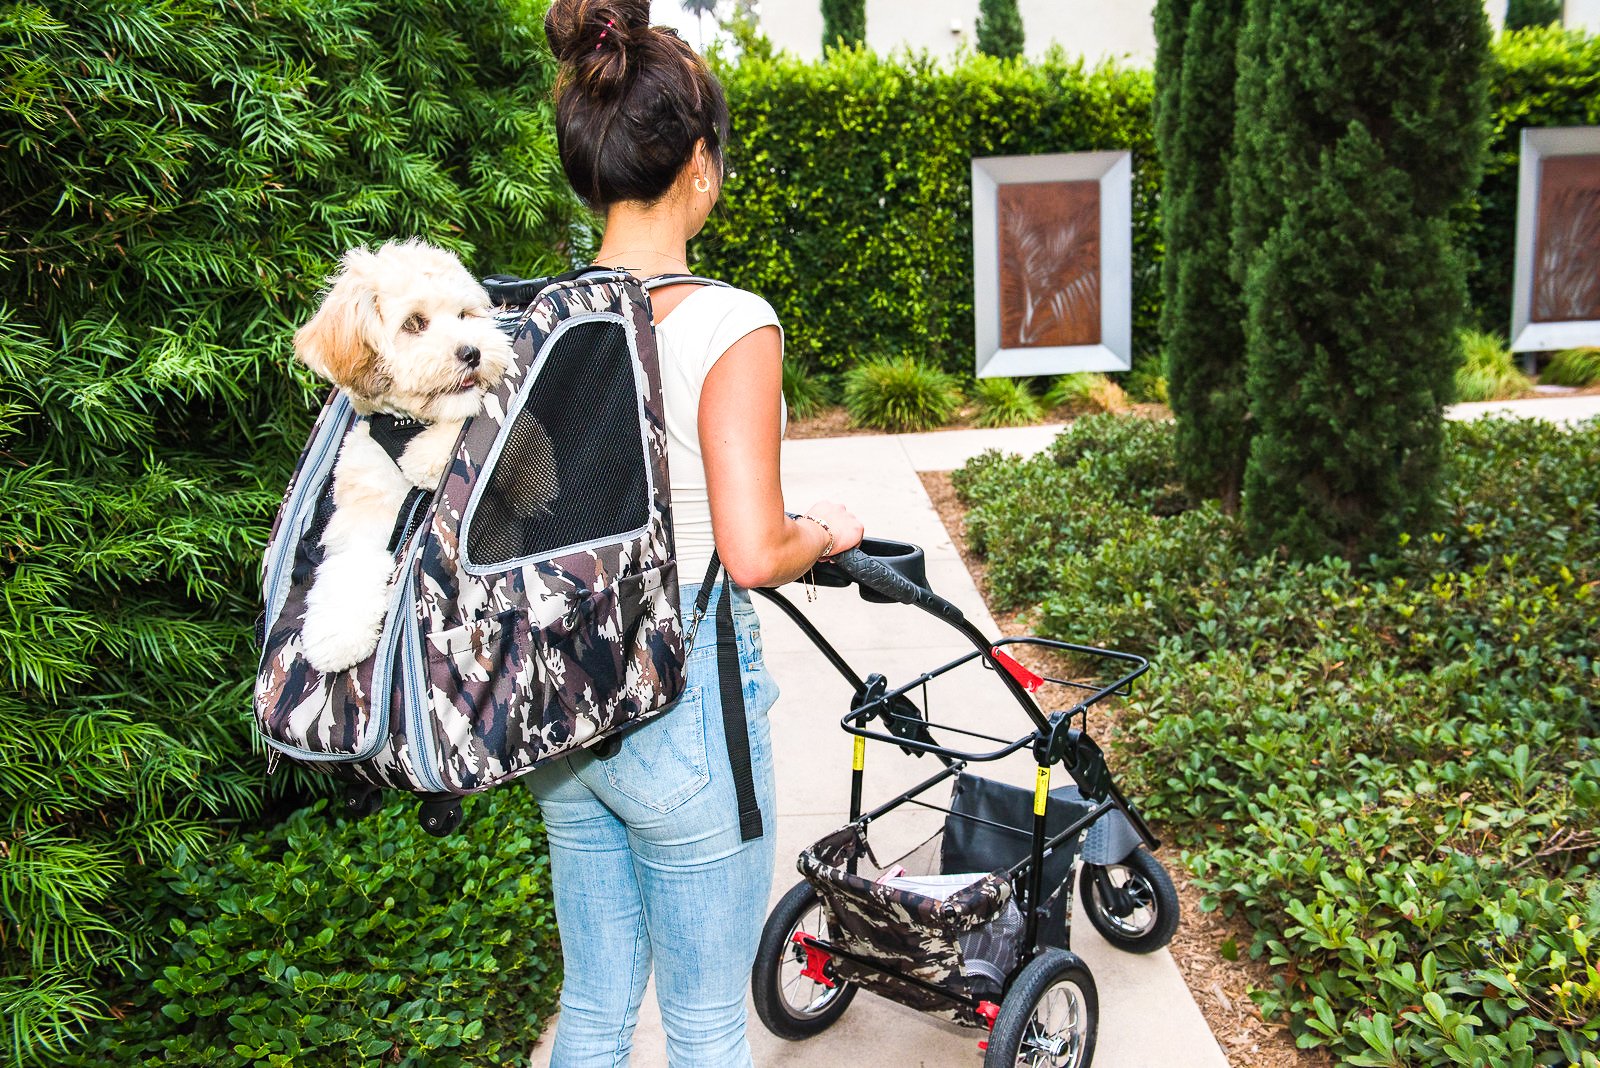 5 Best Luxury Dog Stroller for 2023 